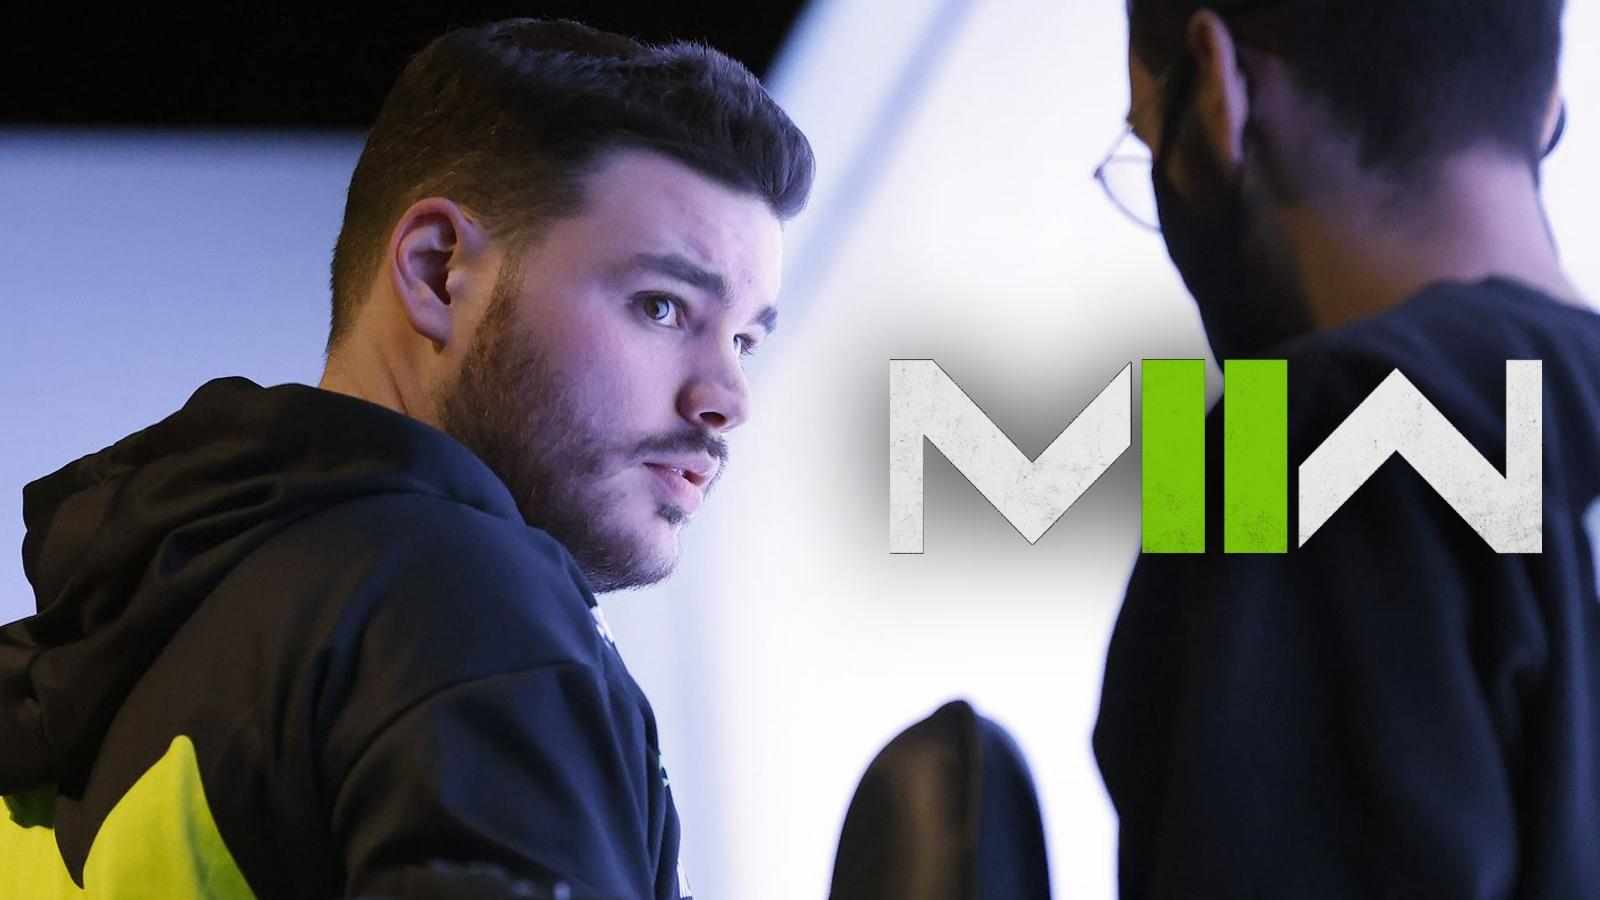 Methodz on LAN for Boston Breach with MW2 logo next to him